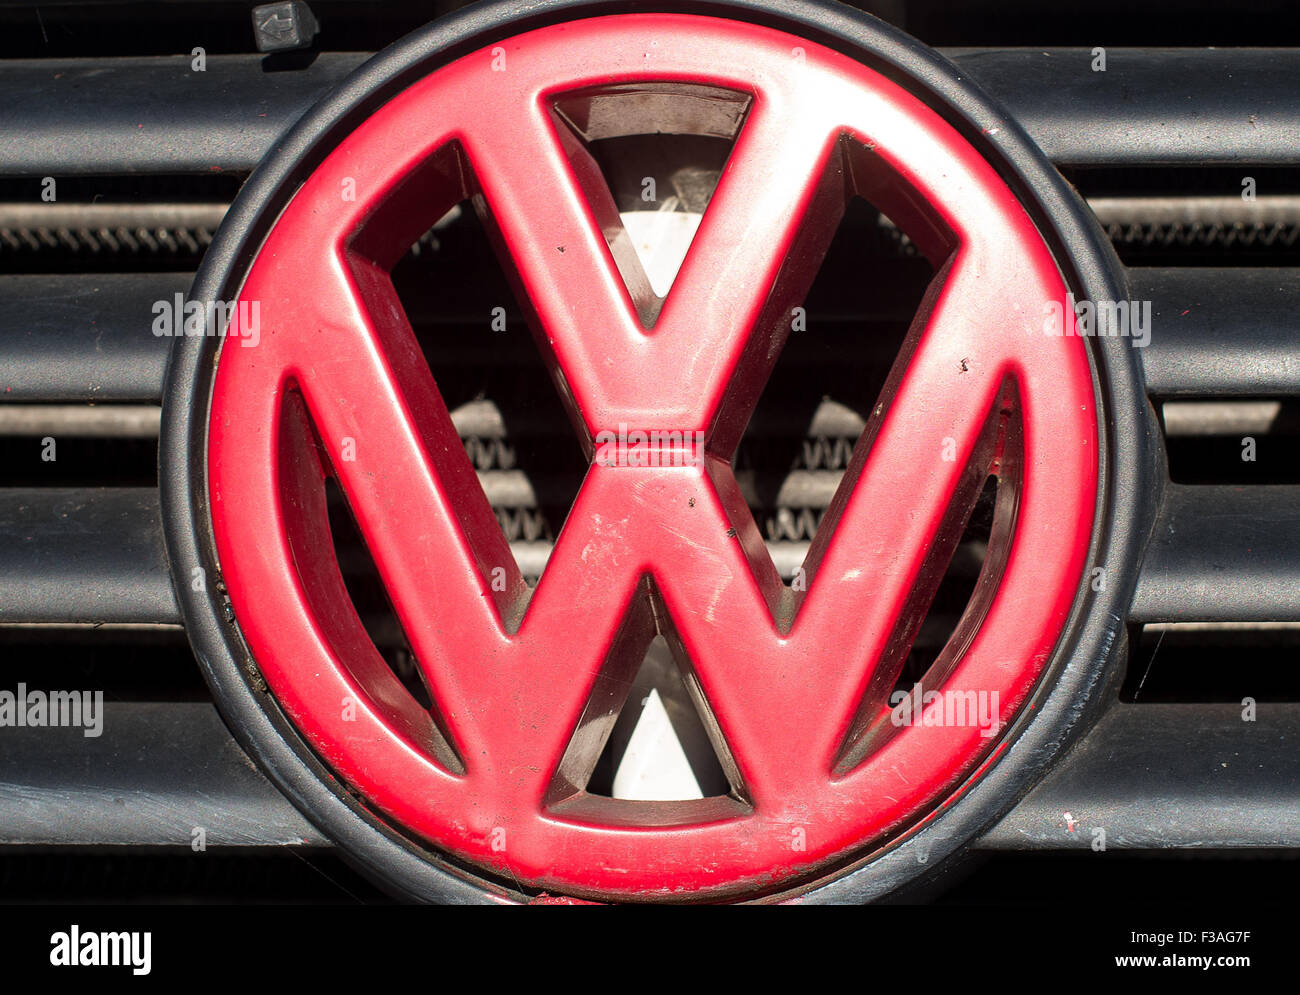 Un Volkswagen rojo logo en un vehículo diesel en Frankfurt an der Oder, Alemania, 03 de octubre de 2015. Volkswagen ha suspendido temporalmente las ventas de varios modelos de coches diesel en Australia, debido a un escándalo de manipular los datos de pruebas de emisiones. Foto: PATRICK PLEUL/dpa Foto de stock